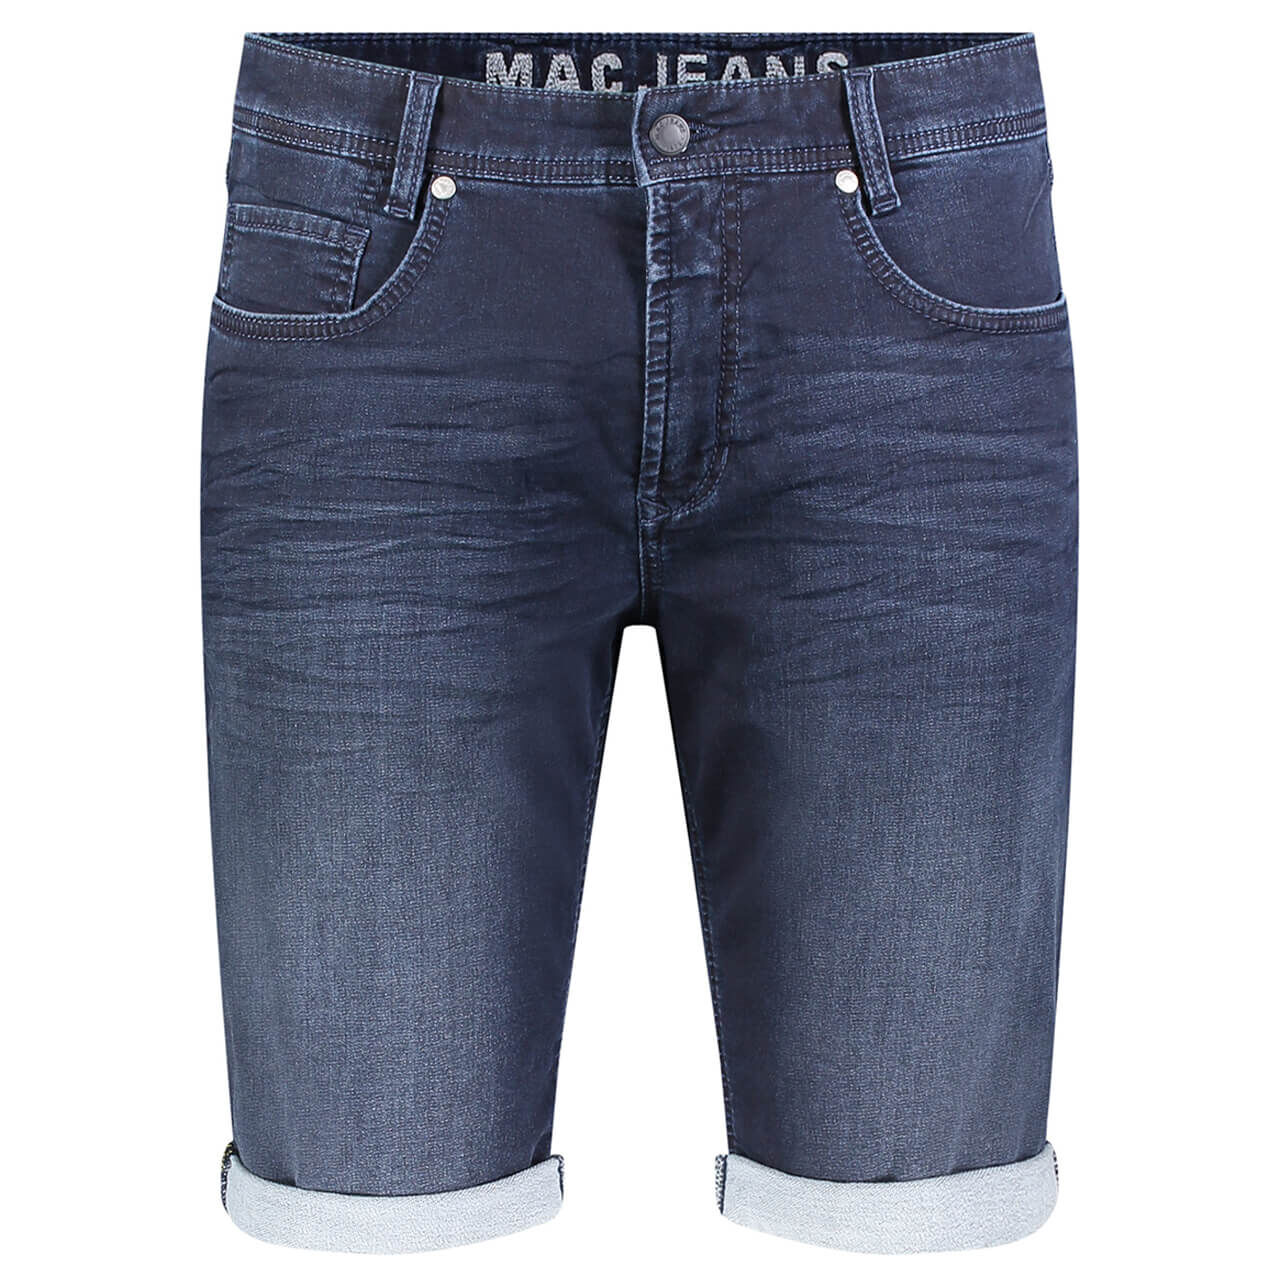 MAC Jeans Jogn Bermuda für Herren in Dunkelblau angewaschen, FarbNr.: H726